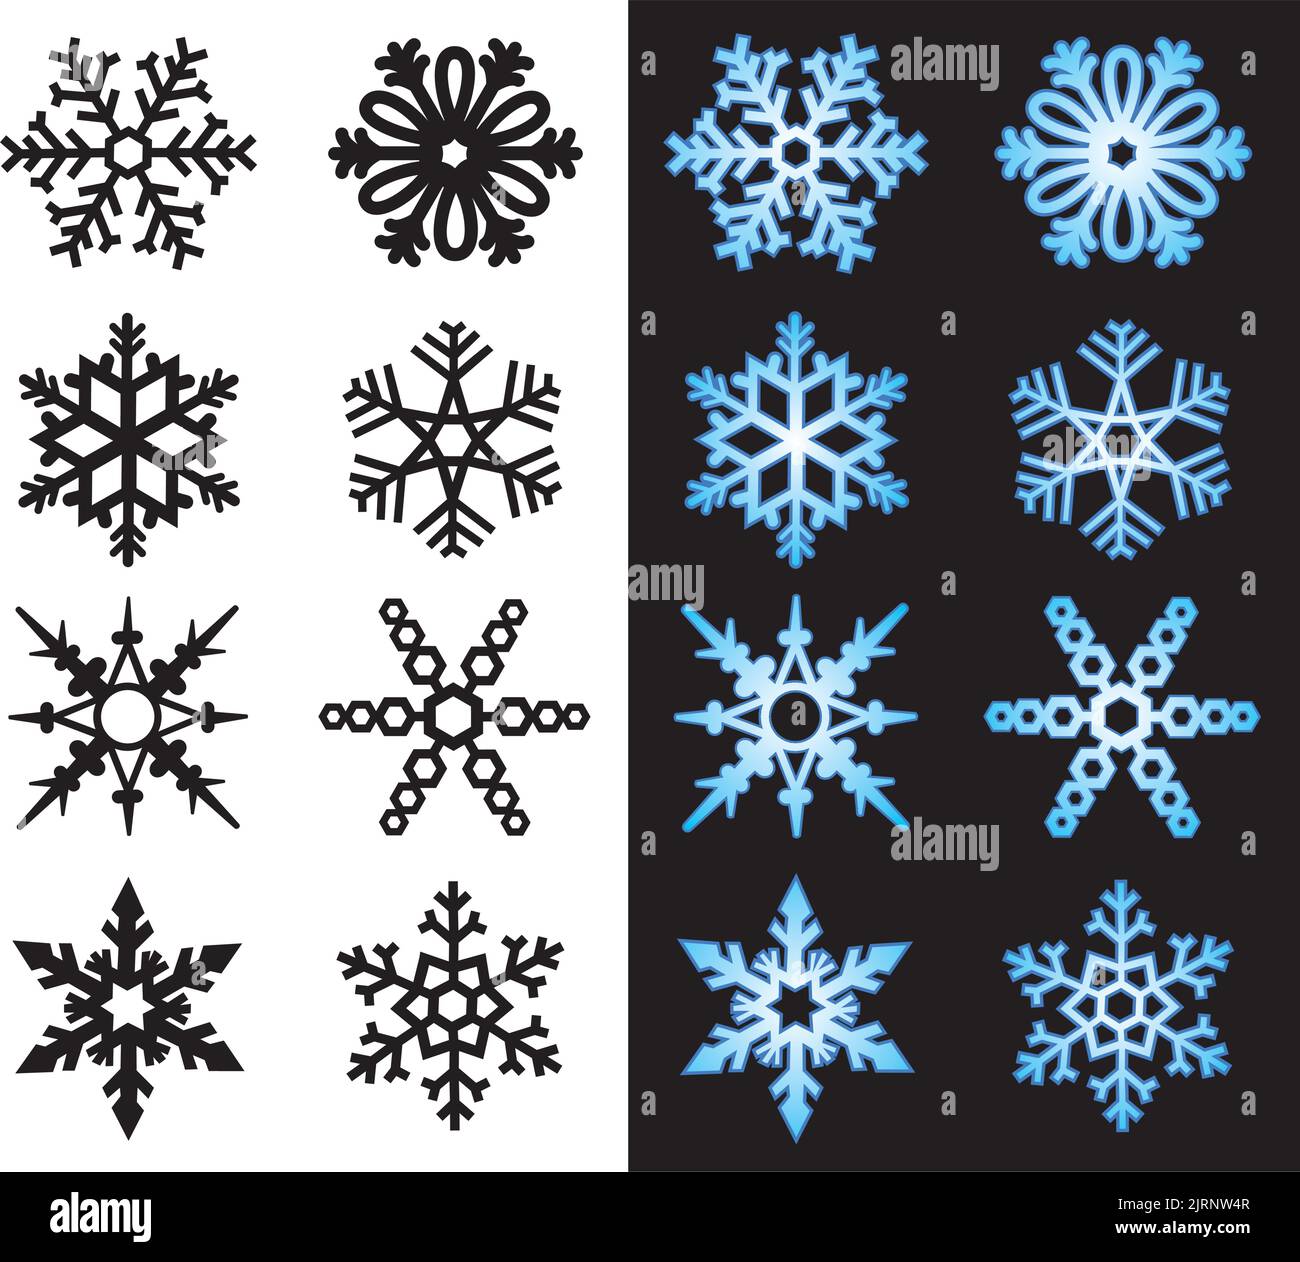 Un insieme di icone vettoriali illustrate di fiocchi di neve d'inverno. Illustrazione Vettoriale